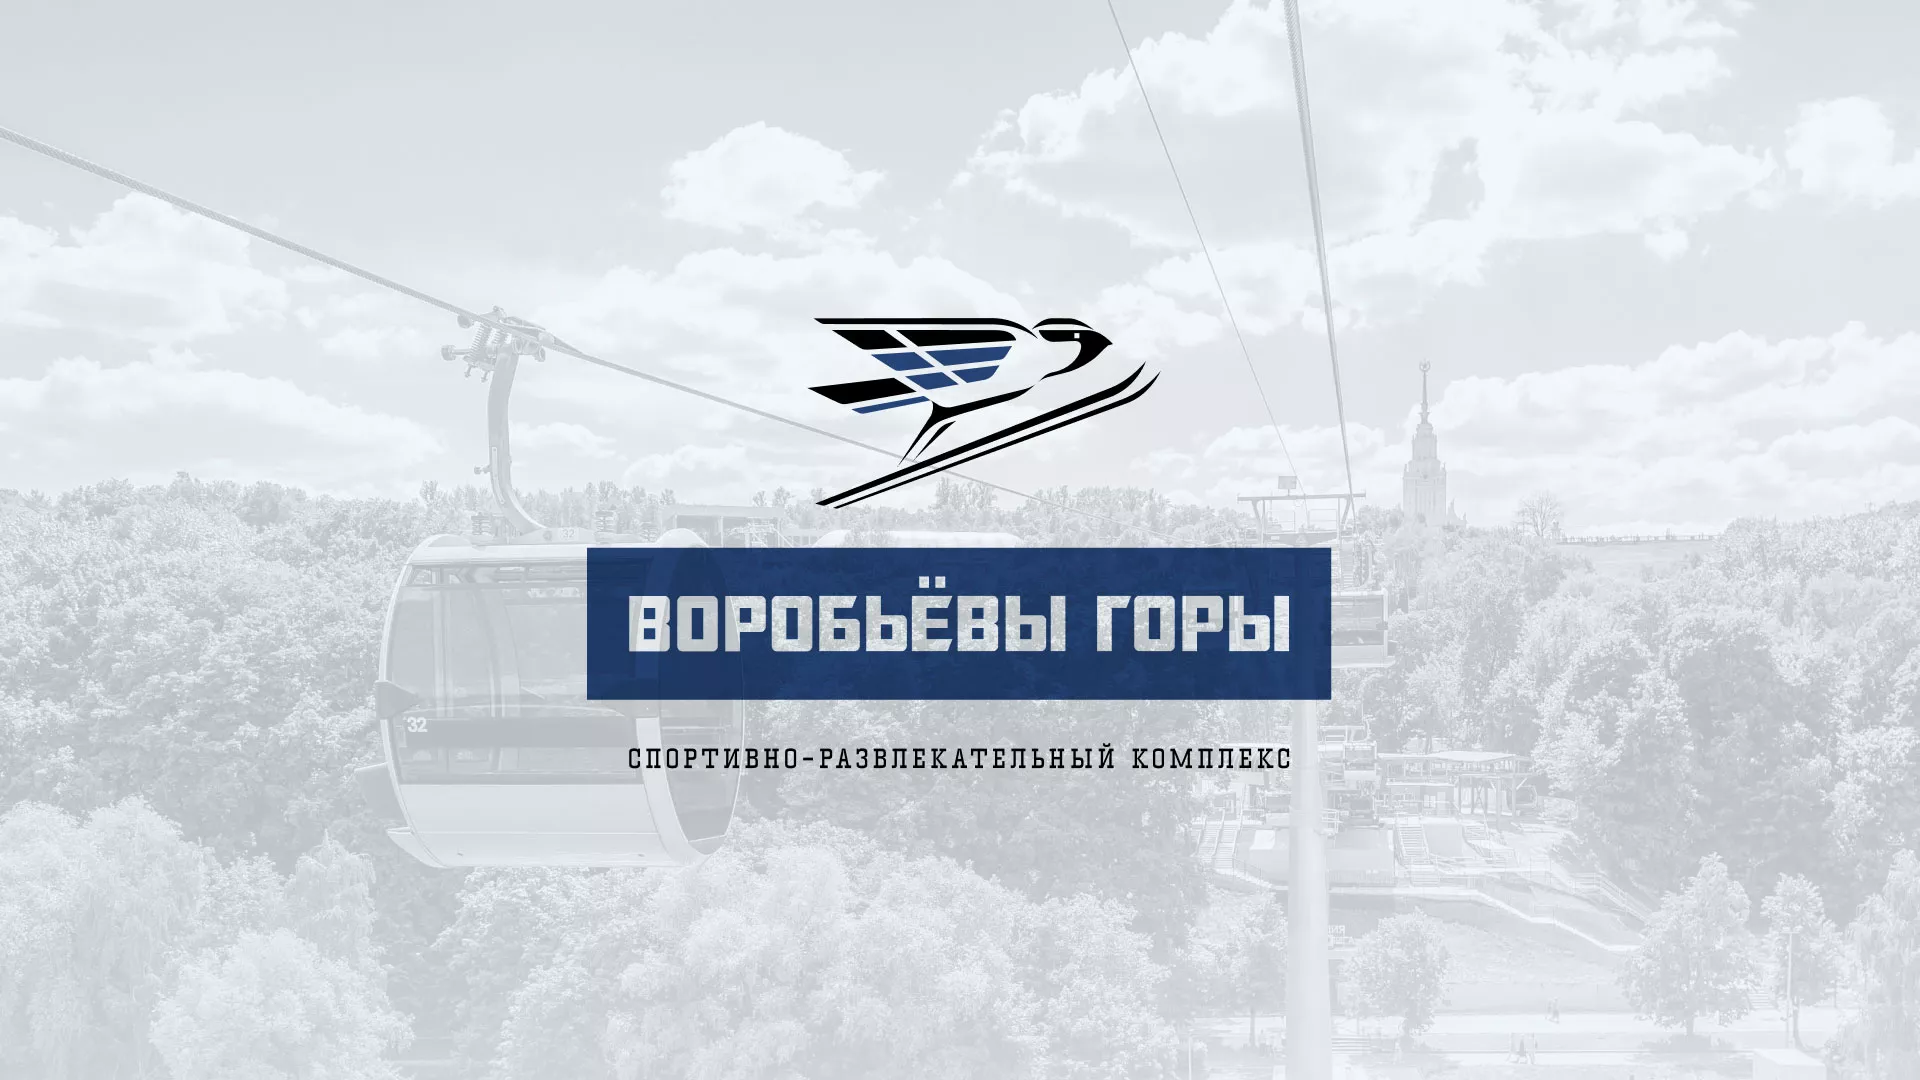 Разработка сайта в Грозном для спортивно-развлекательного комплекса «Воробьёвы горы»